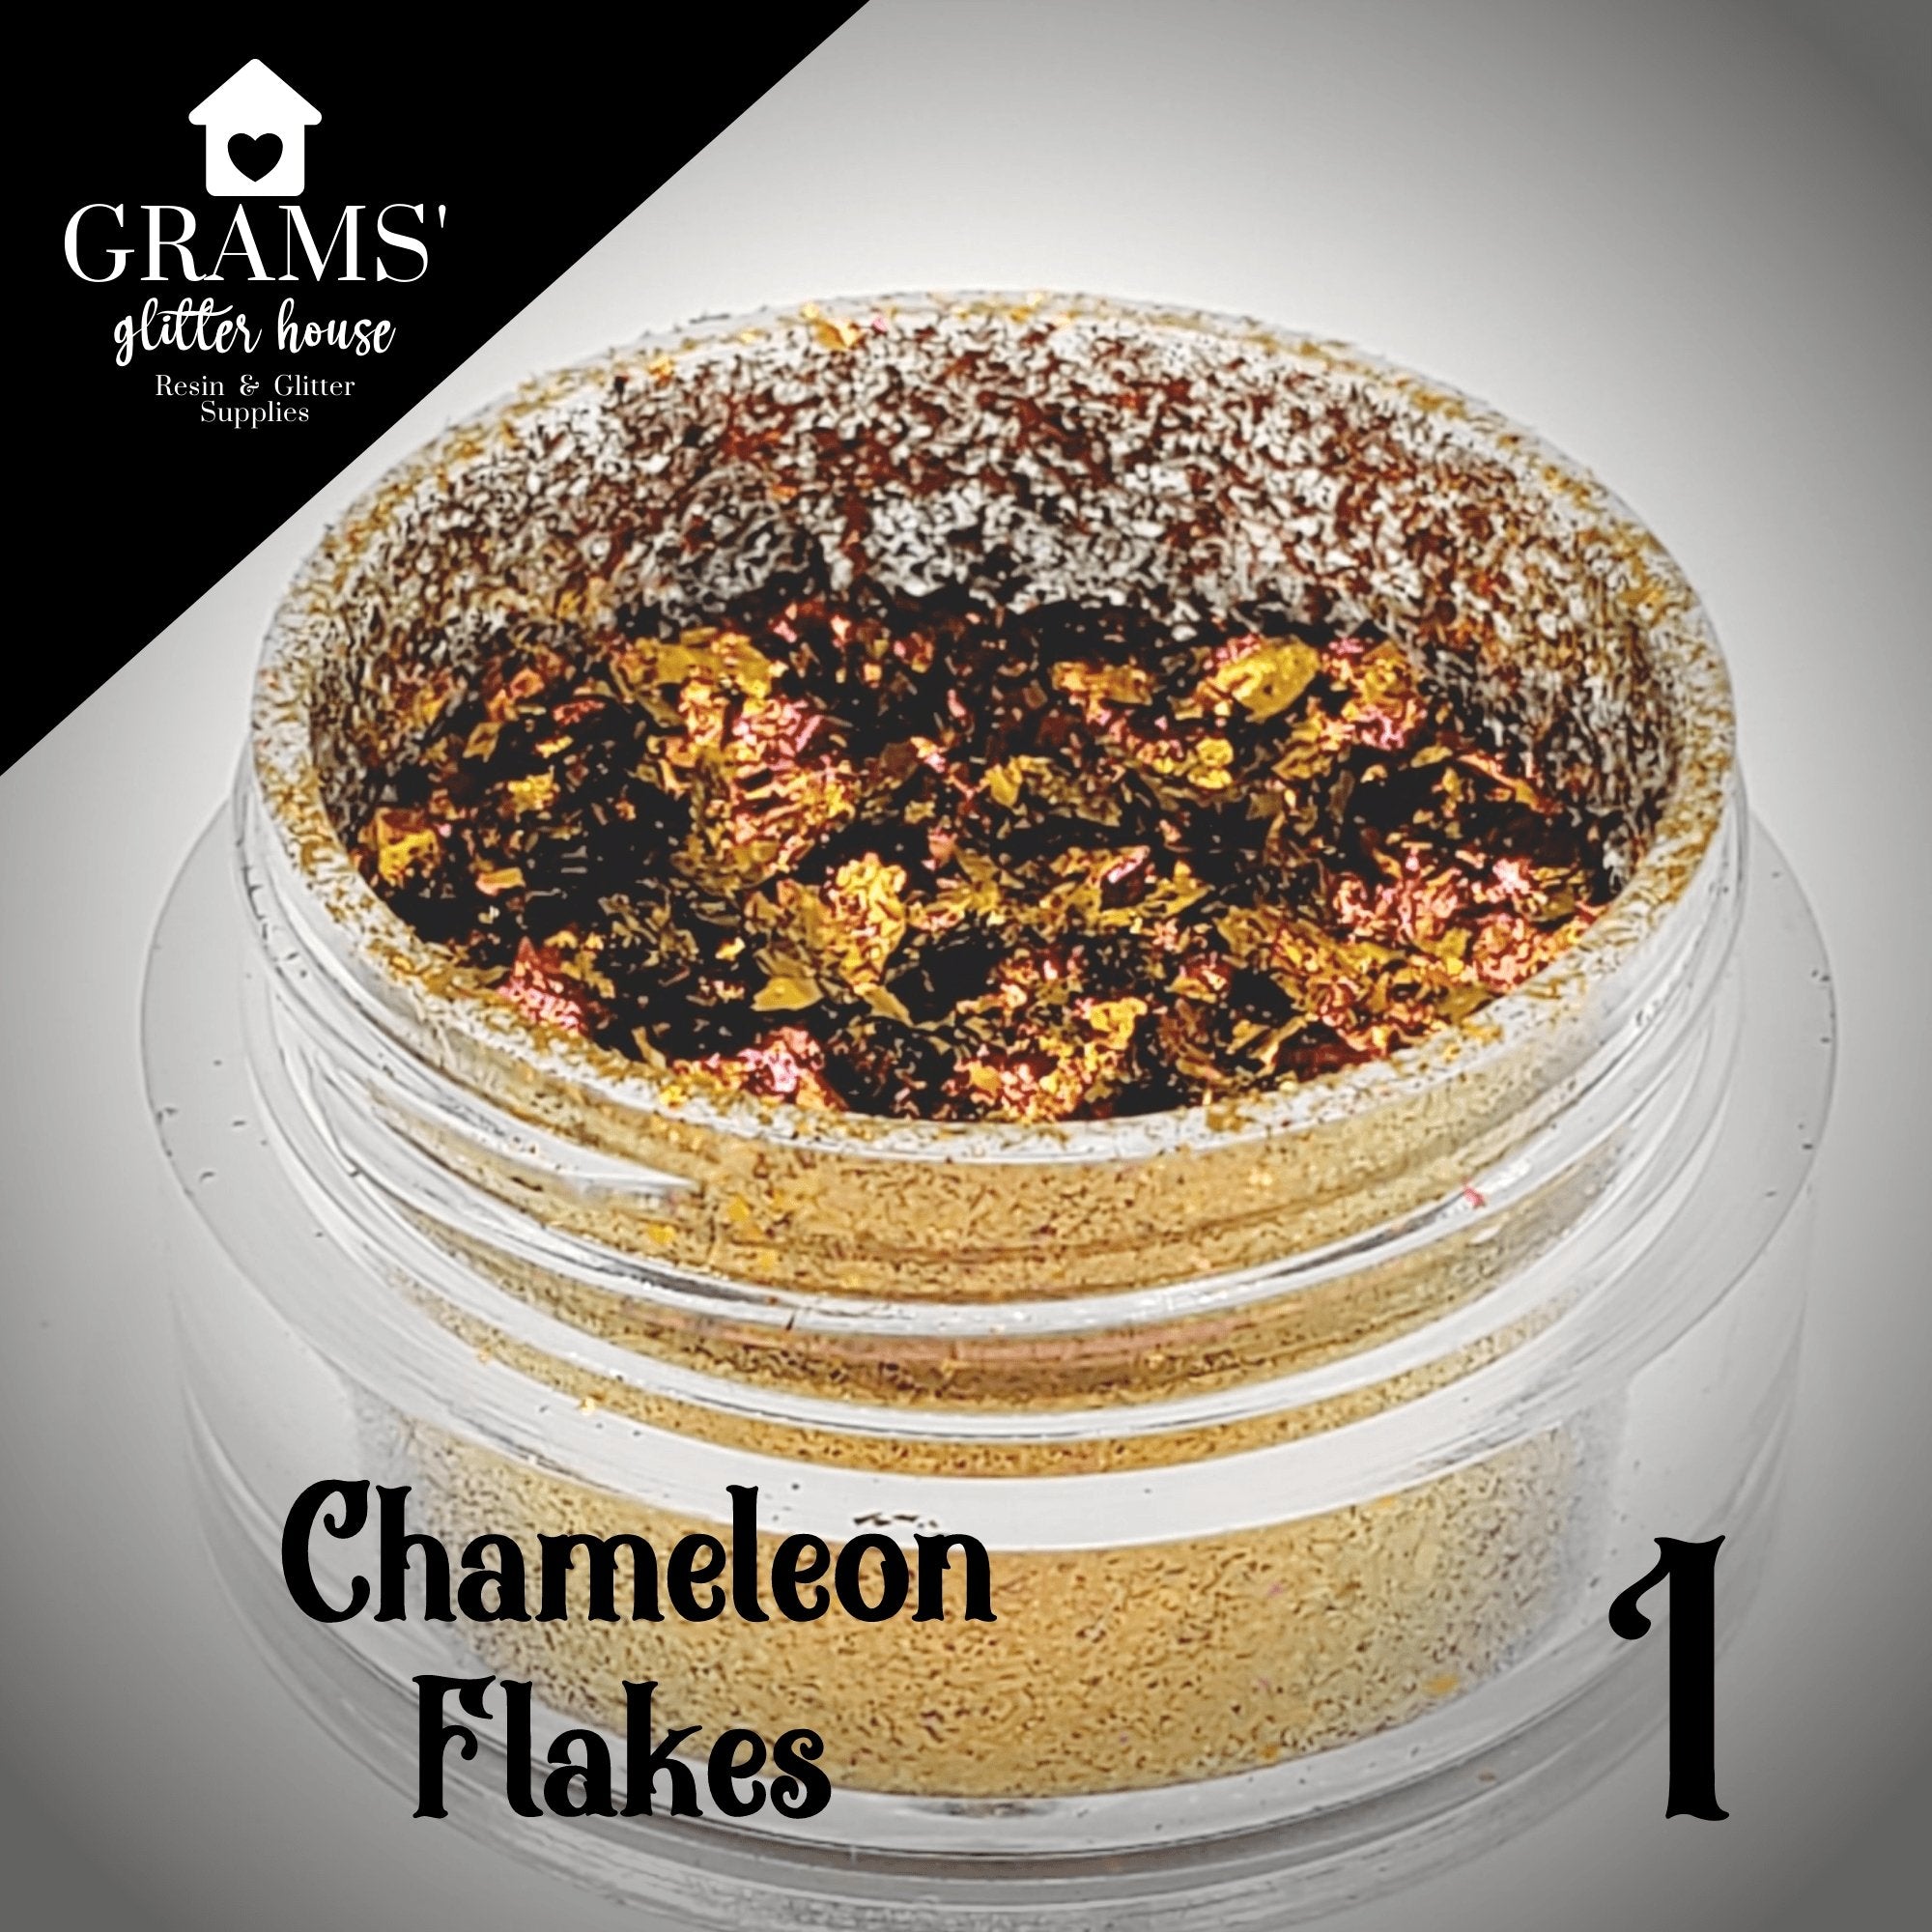 Grams' Glitter House Chameleon Flake 1 | Mold Flakes Chameleon Flakes